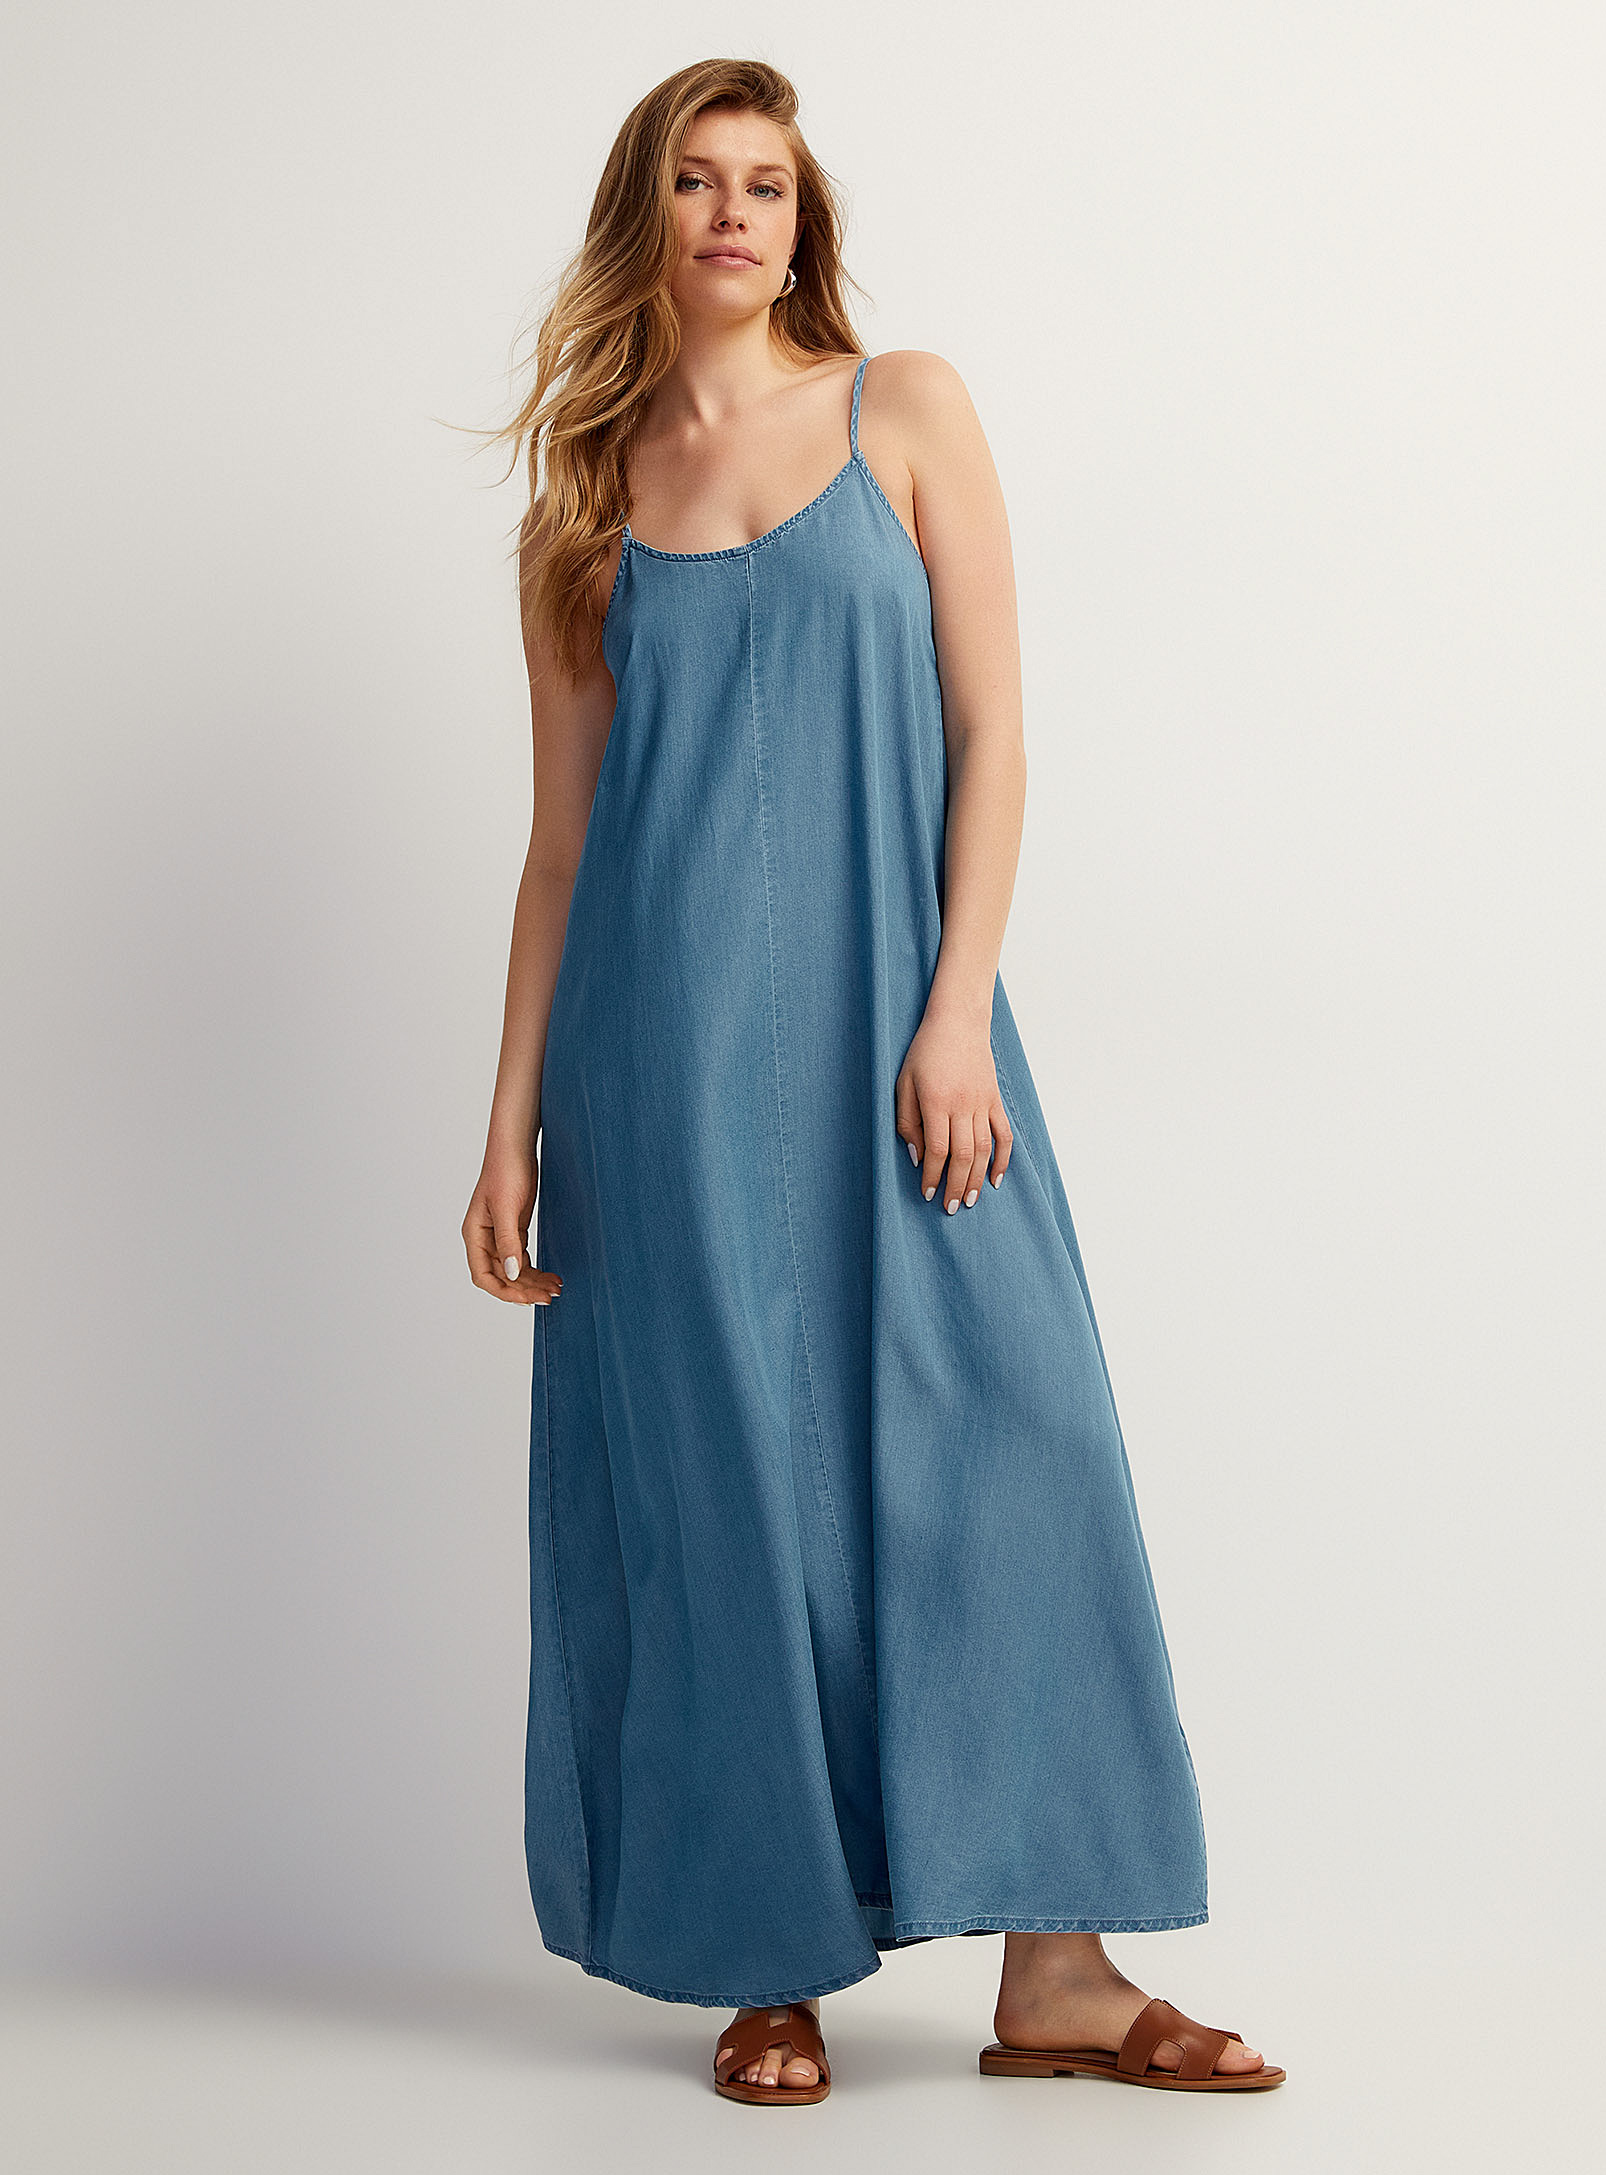 Vero Moda - La longue robe denim souple